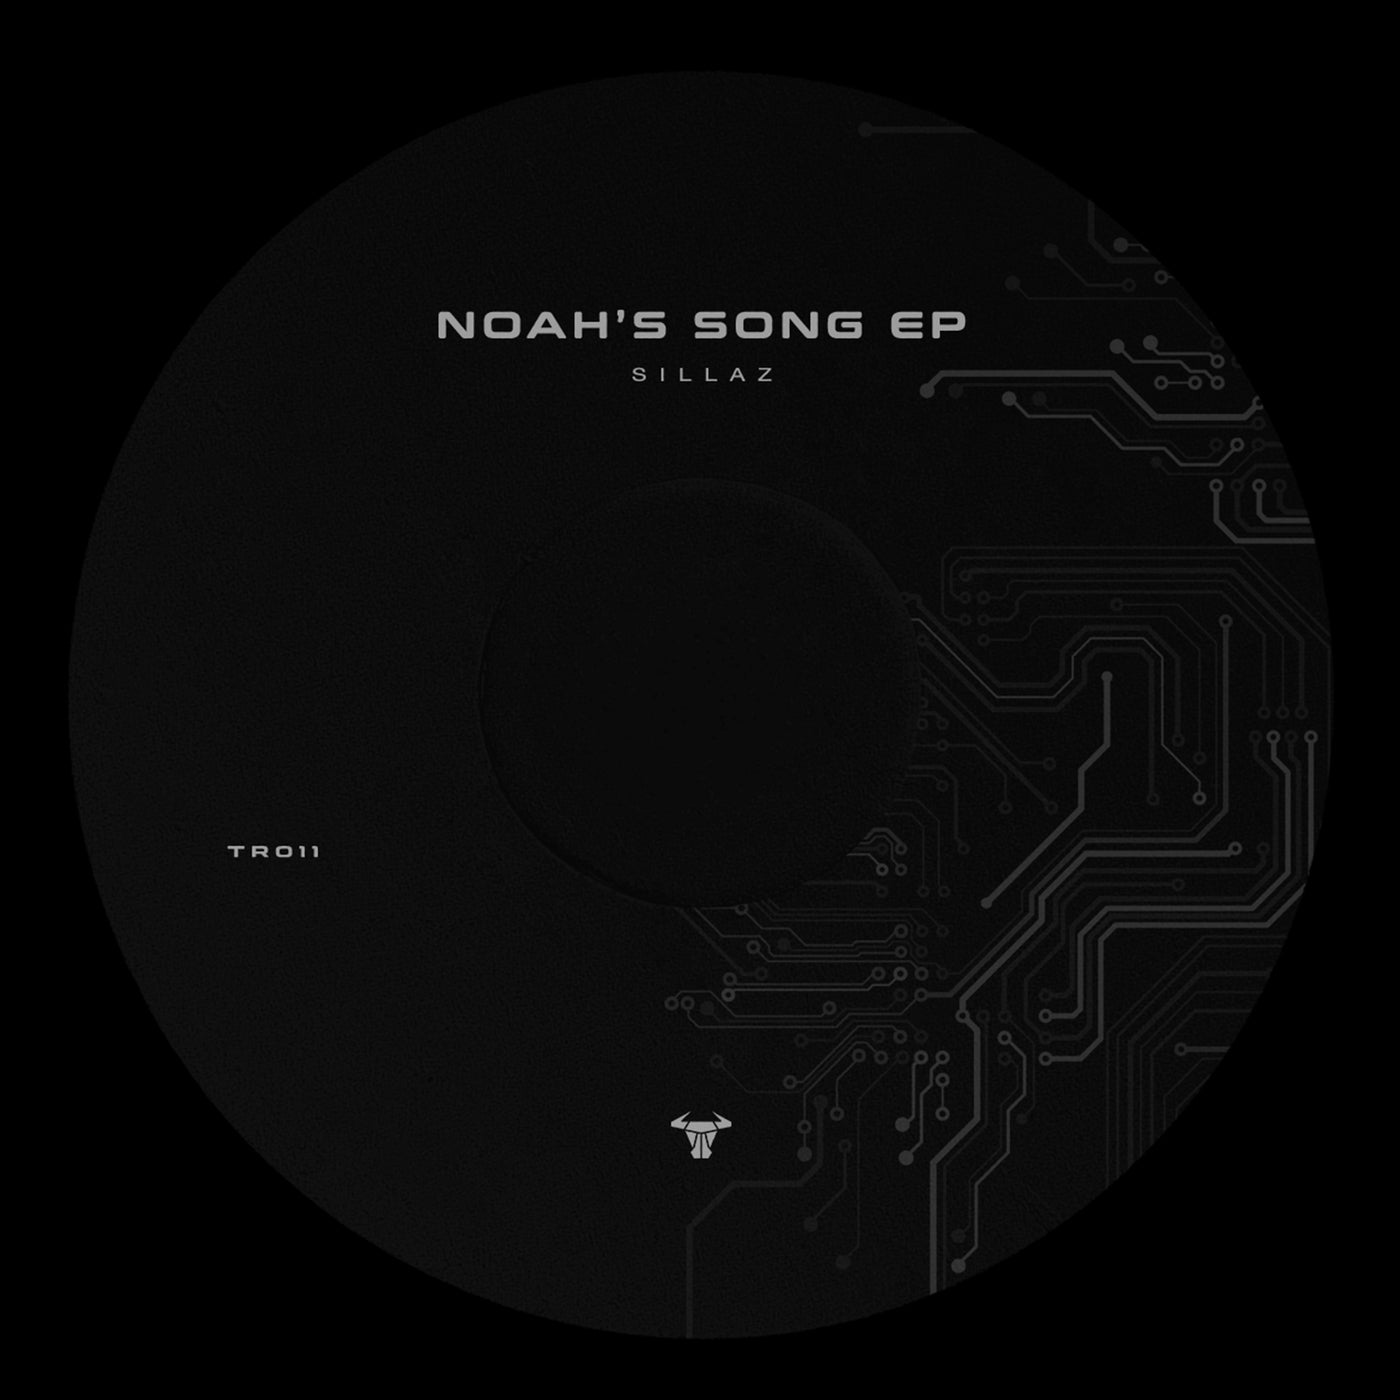 Noah's Song EP